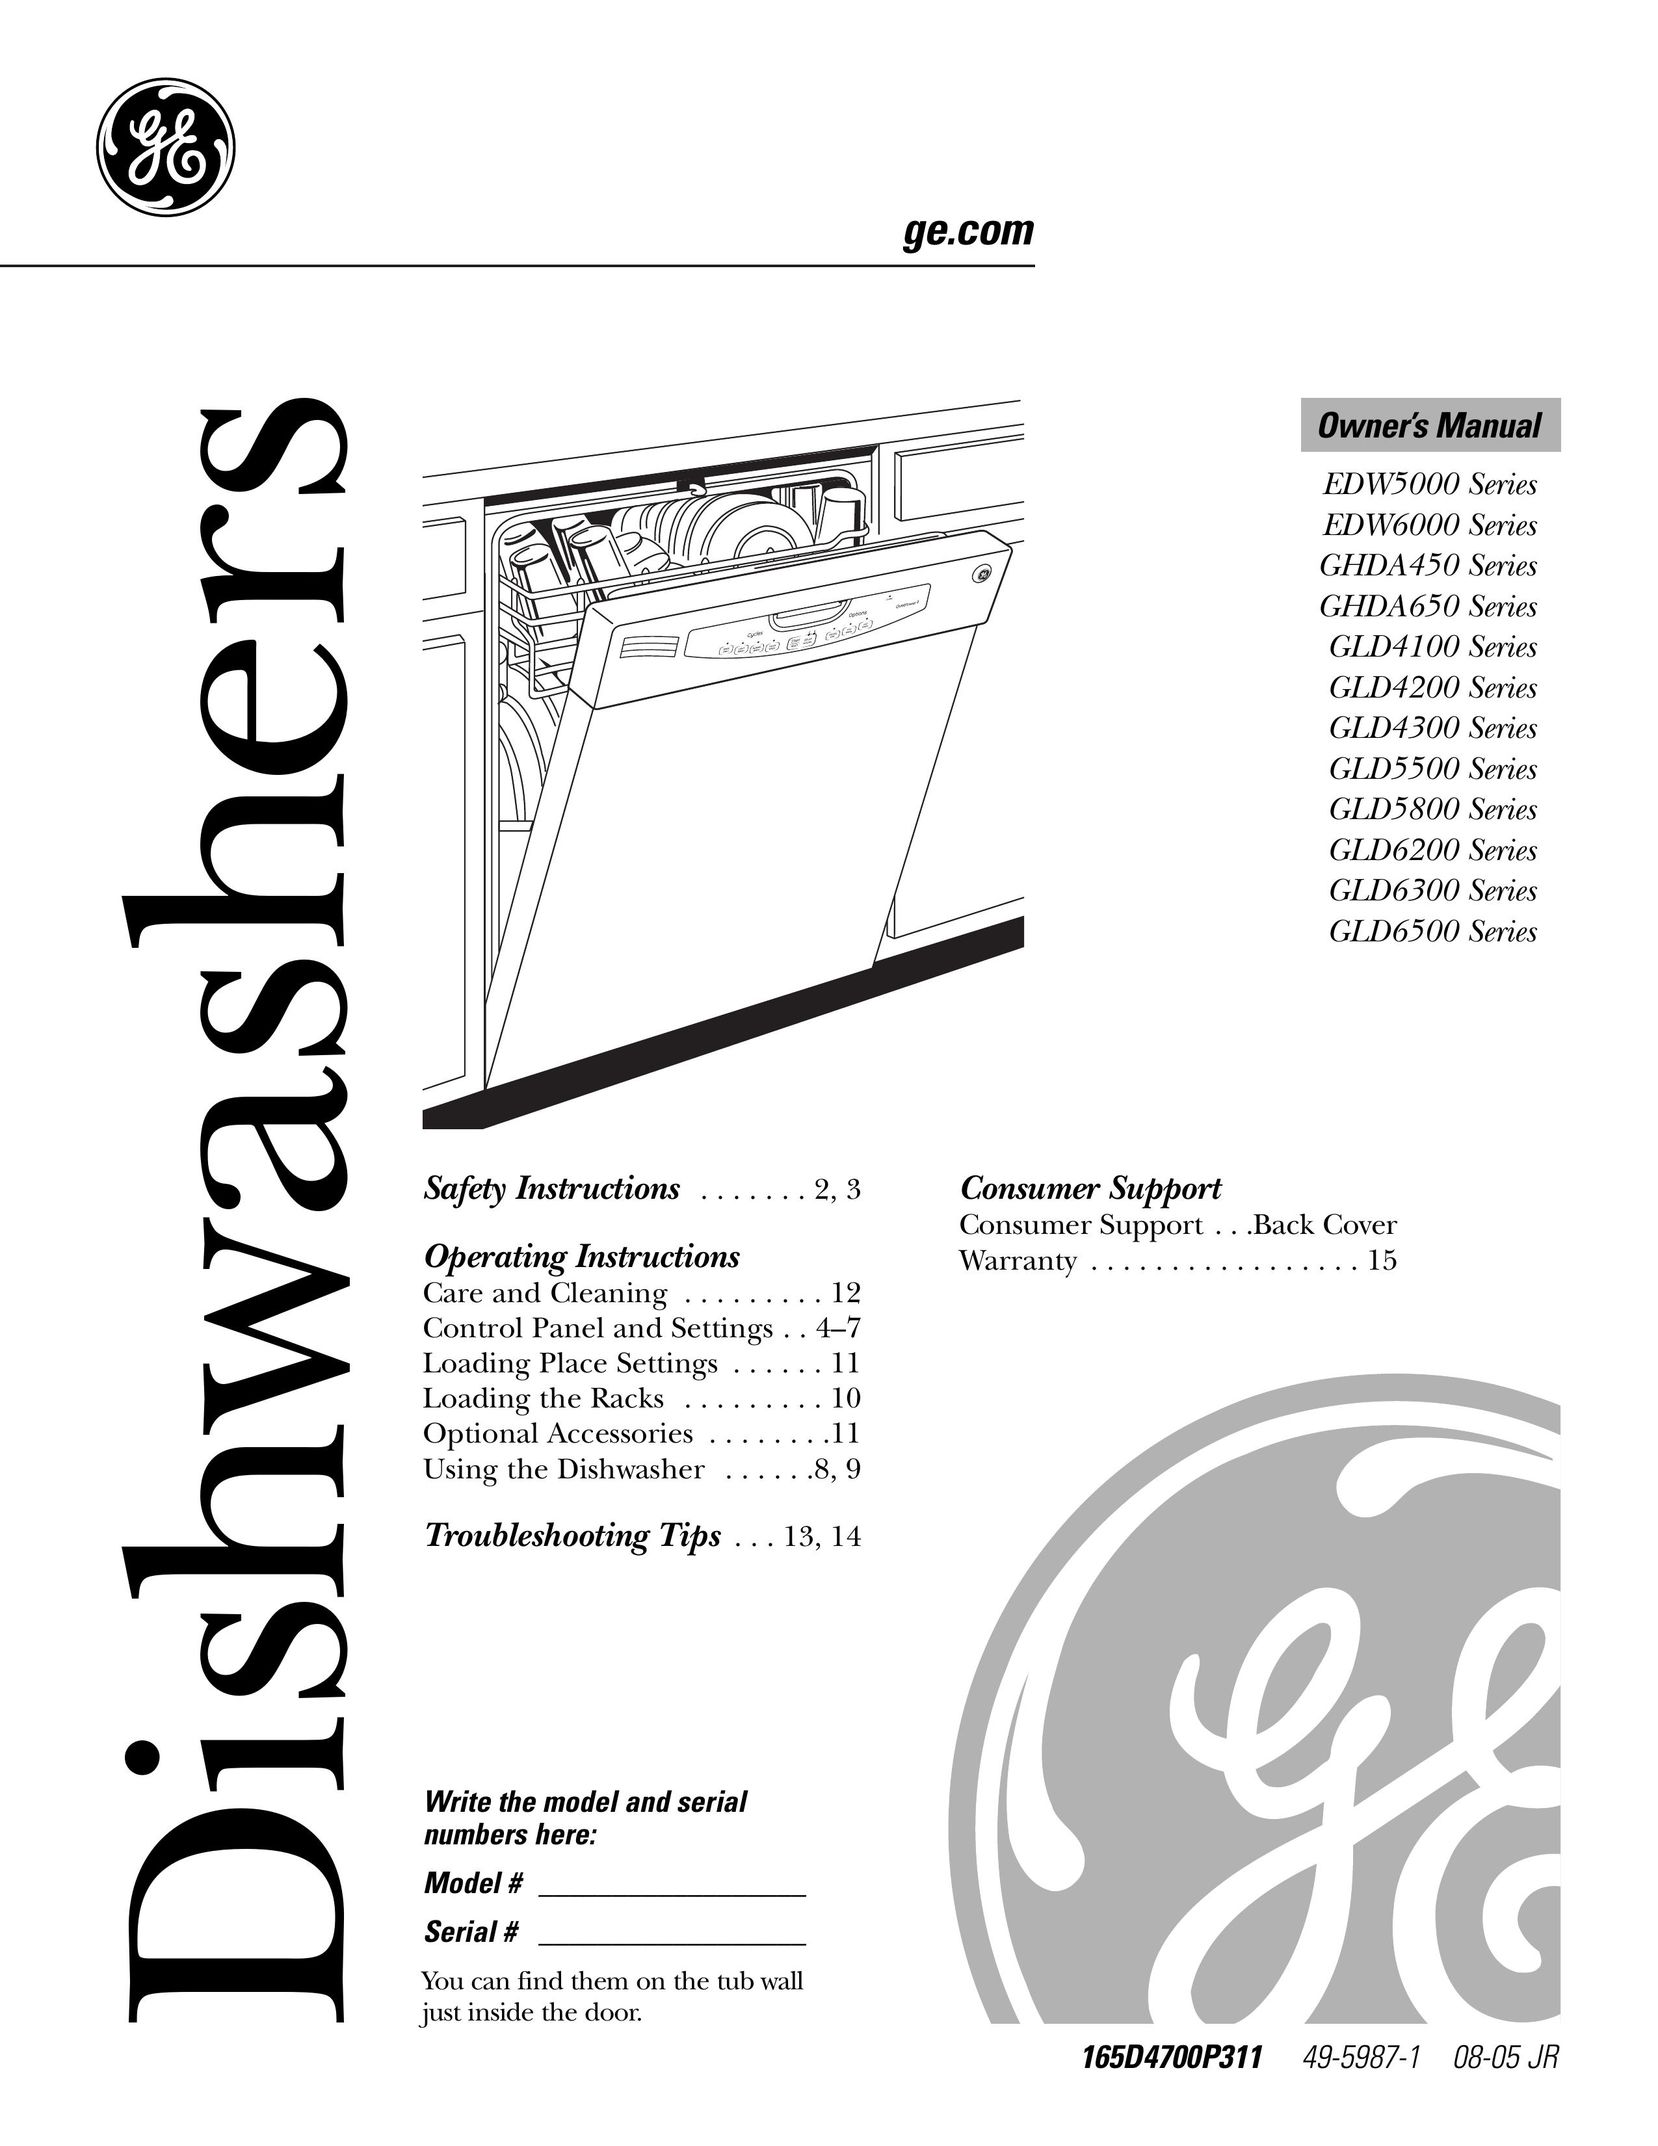 GE Monogram GLD6300 Dishwasher User Manual